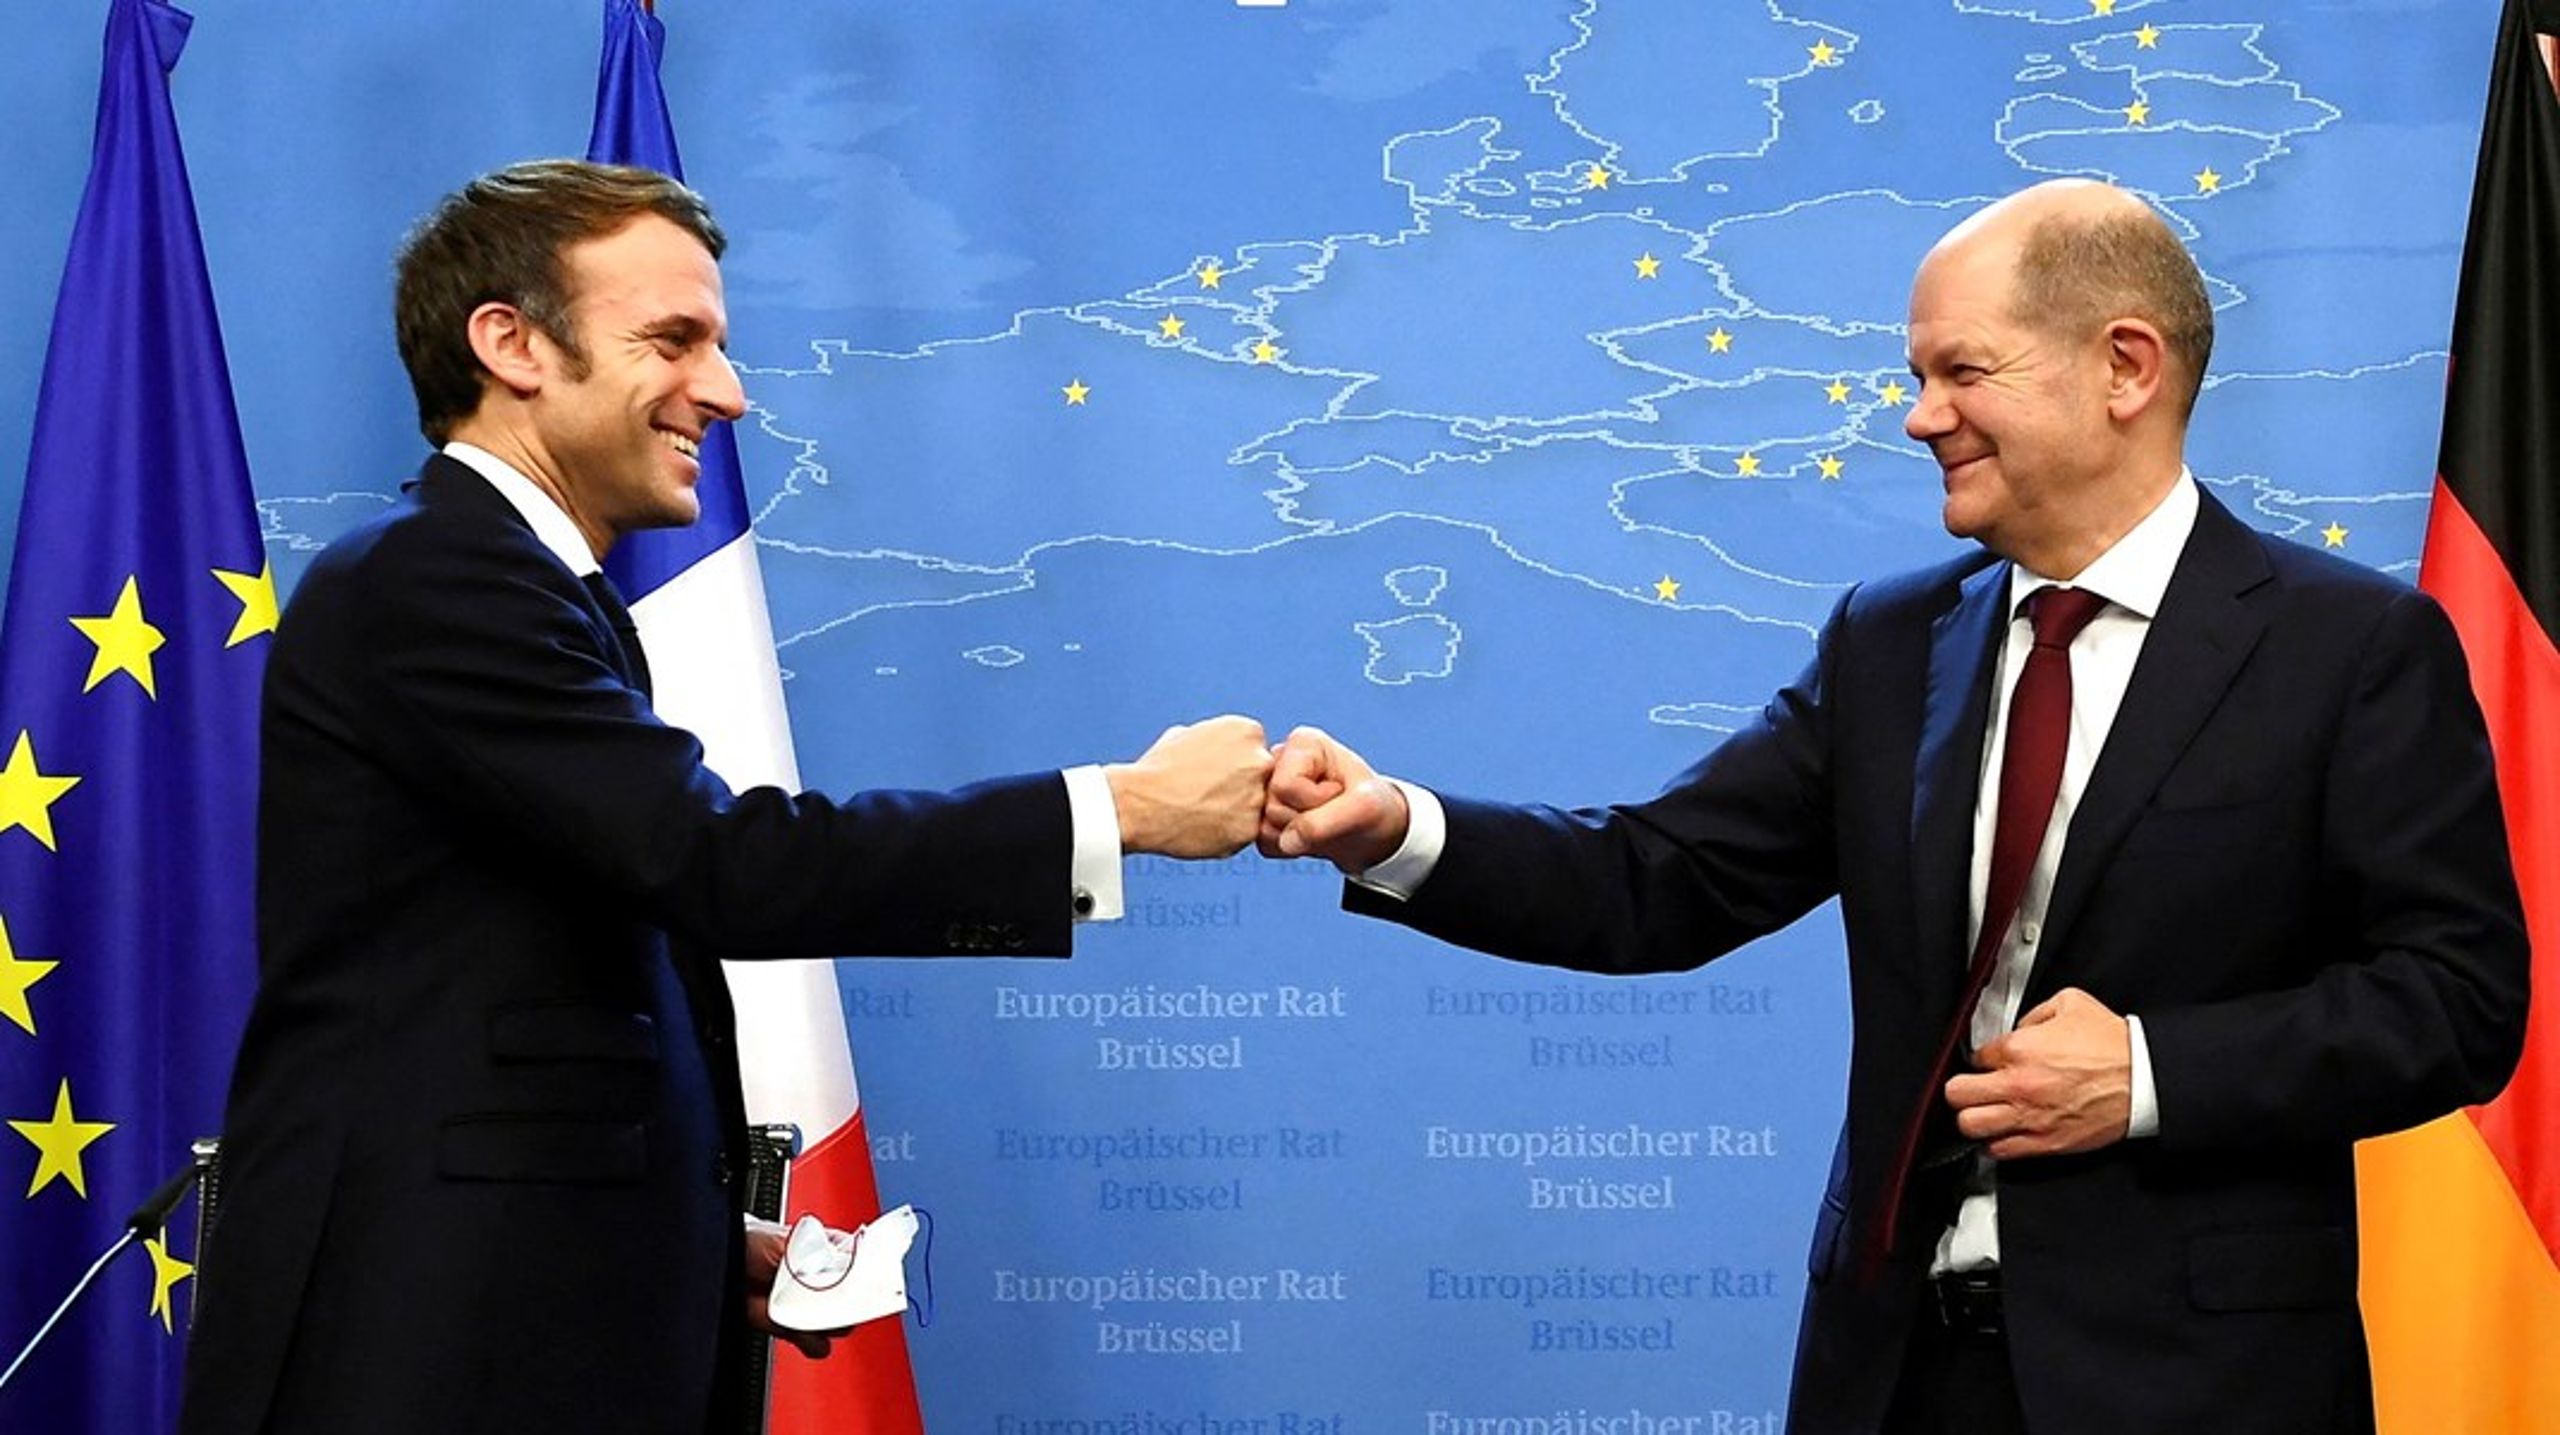 Det tysk-fransk samarbejde om fremtidens EU virker til at blive tættere. Intet tyder på, at Danmarks statsminister, Mette Frederiksen (S), vil ændre EU-kursen, skriver Preben Bonnén.&nbsp;